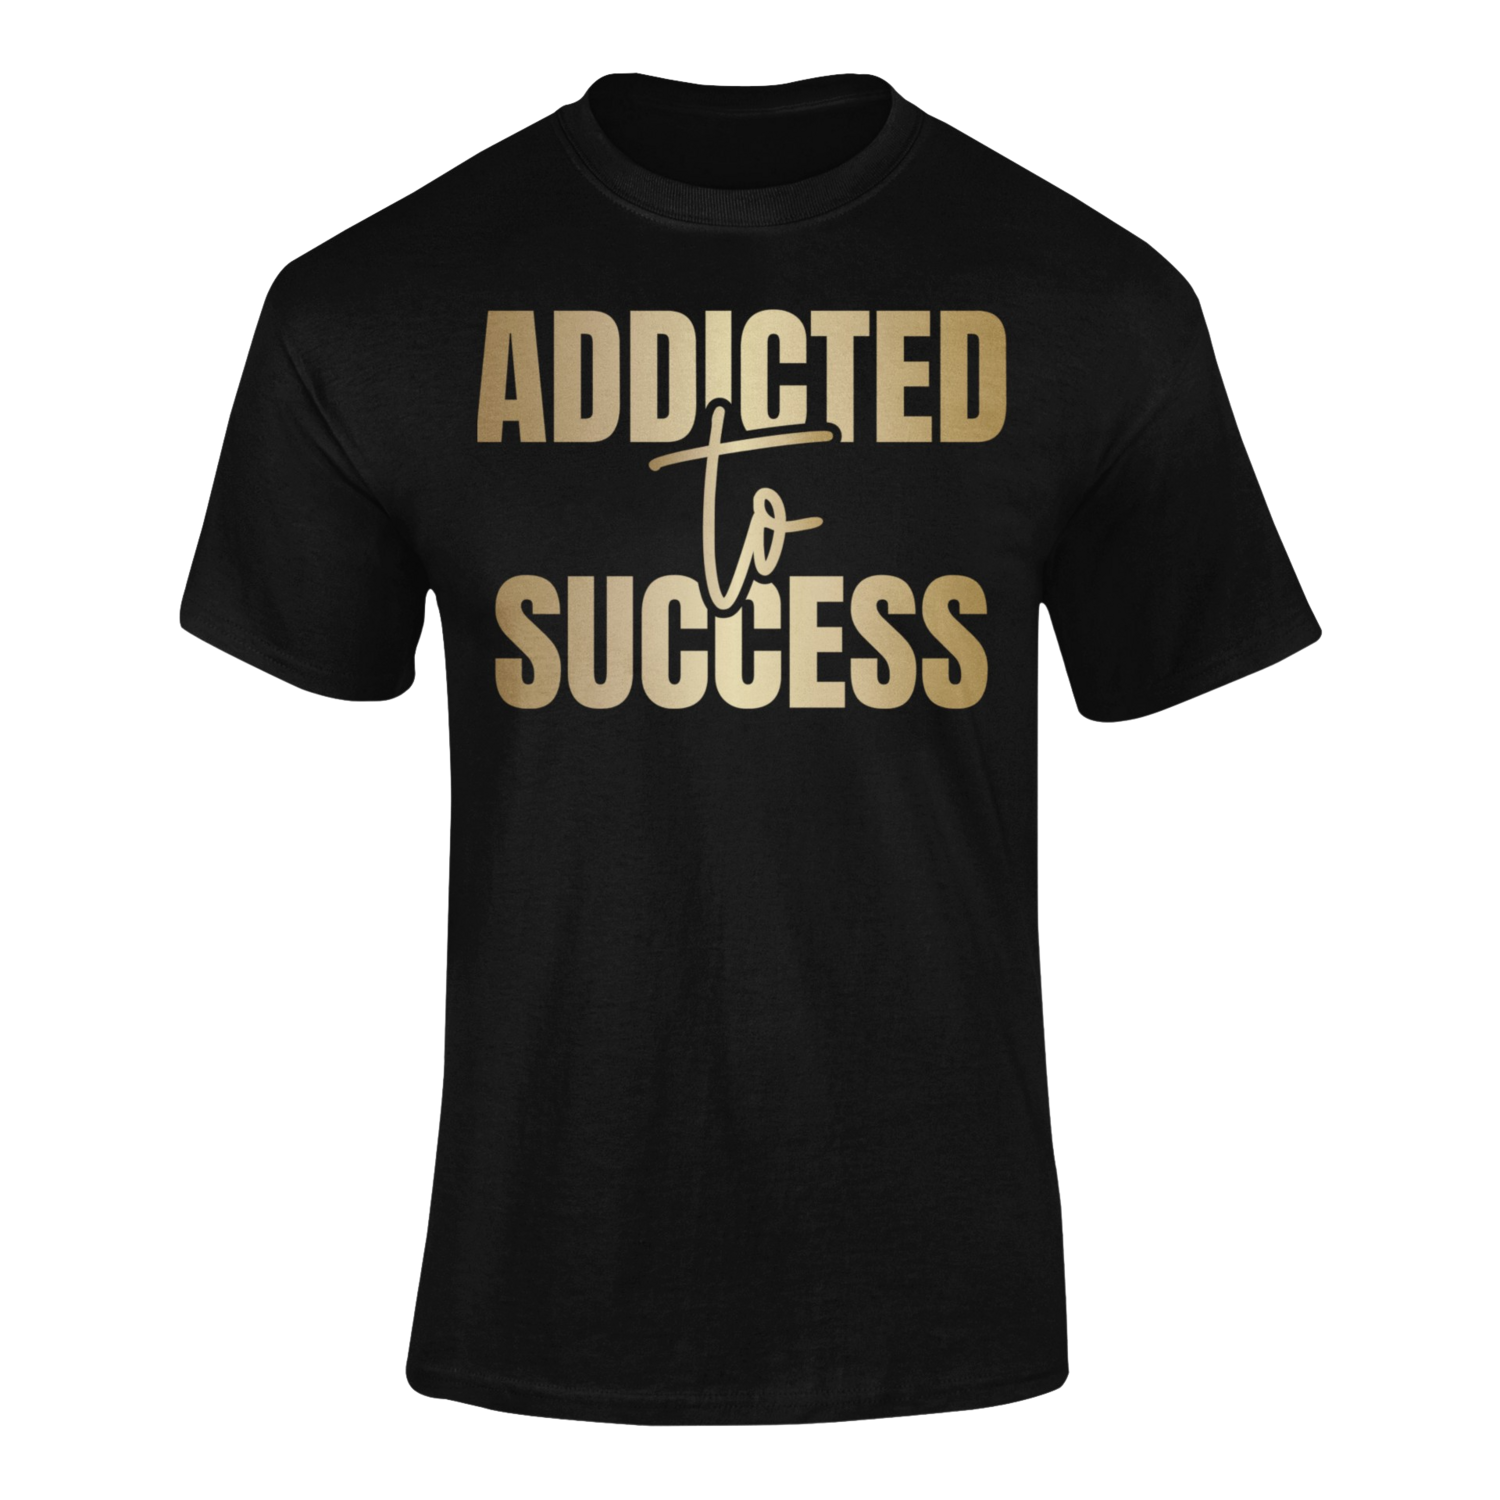 ADDICTED TO SUCCESS